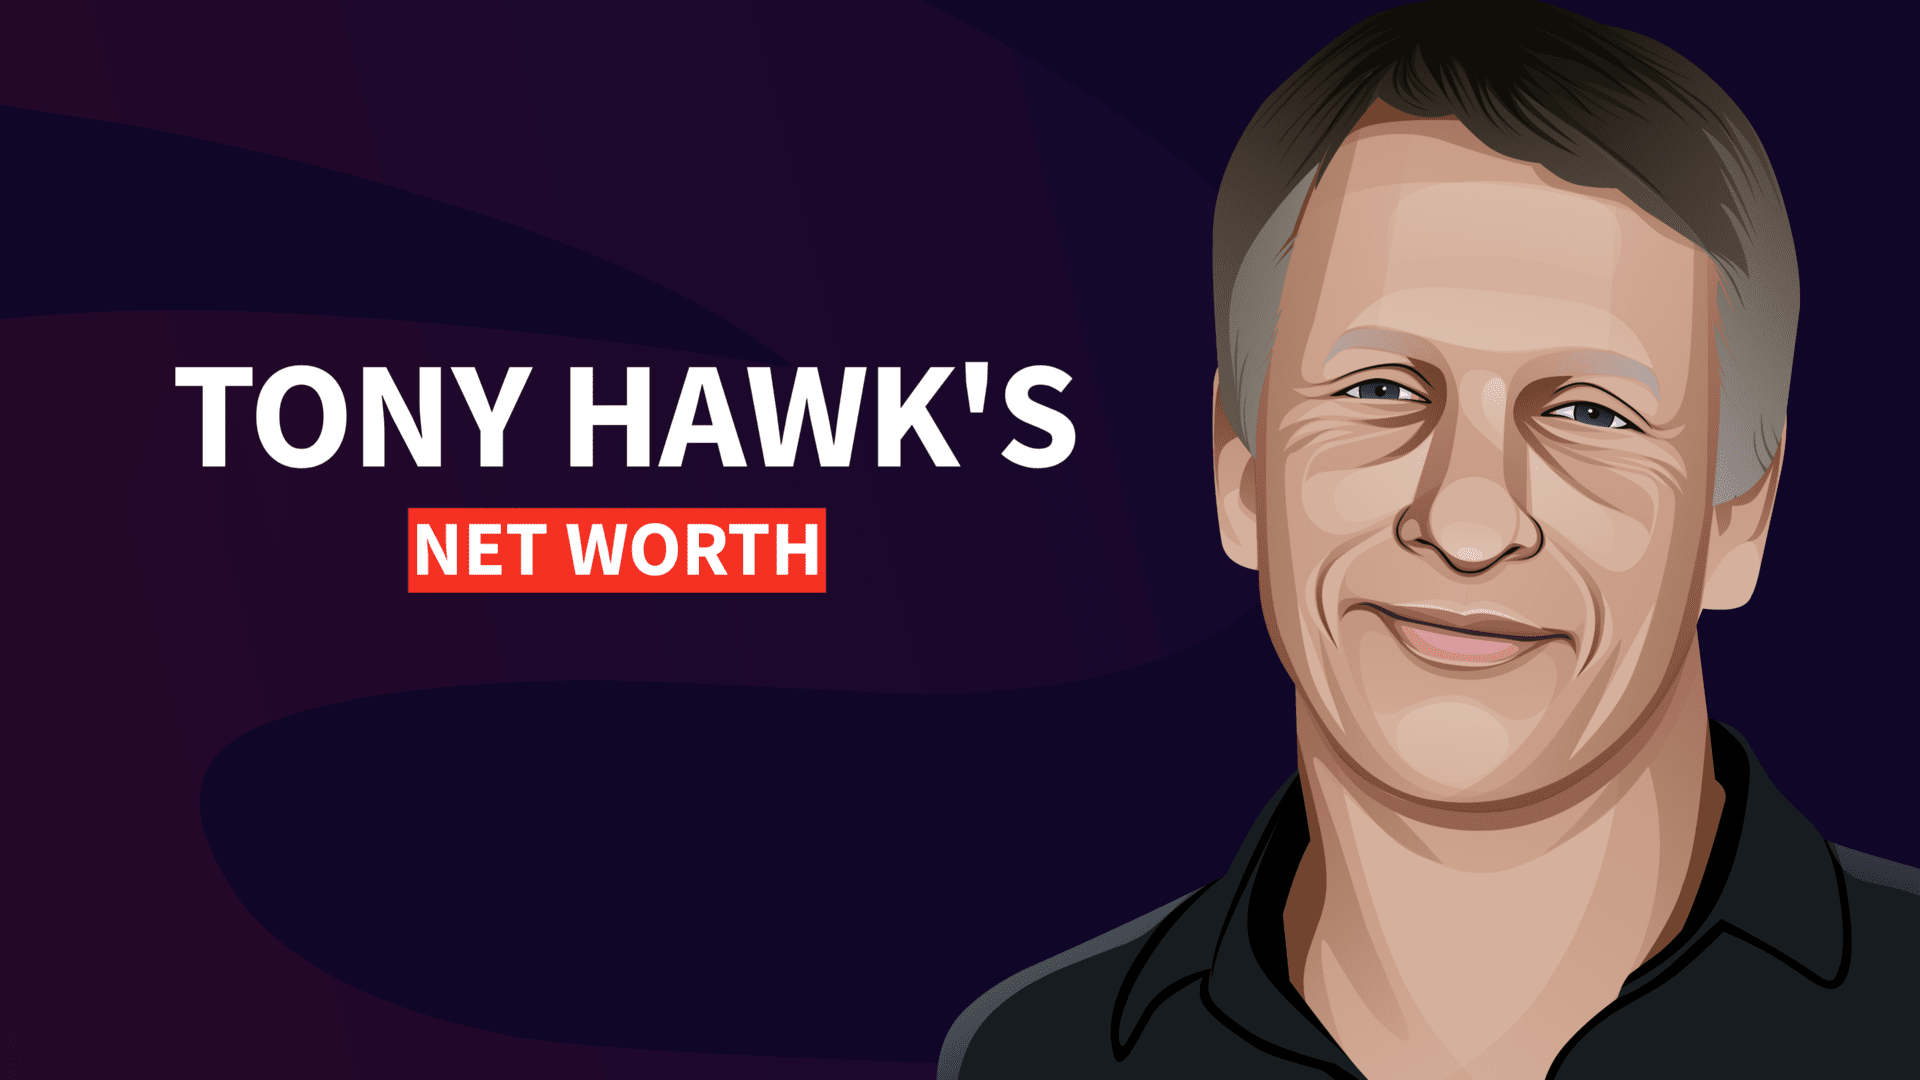 Tony Hawk's Net Worth and Inspiring Story